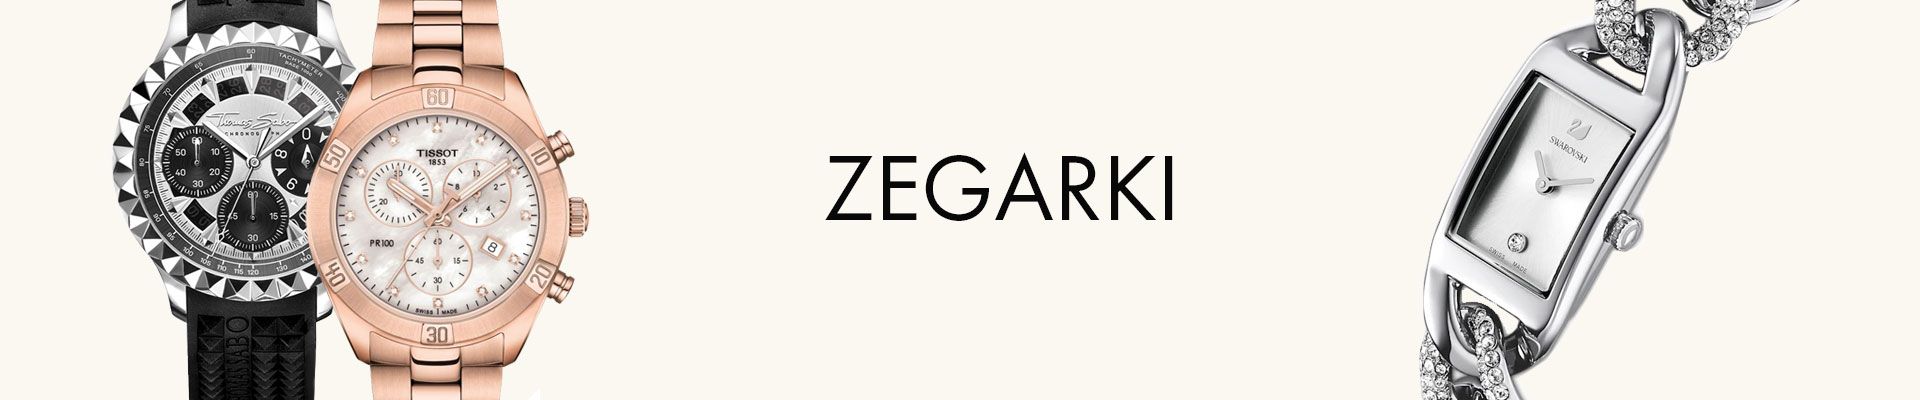 Zegarki